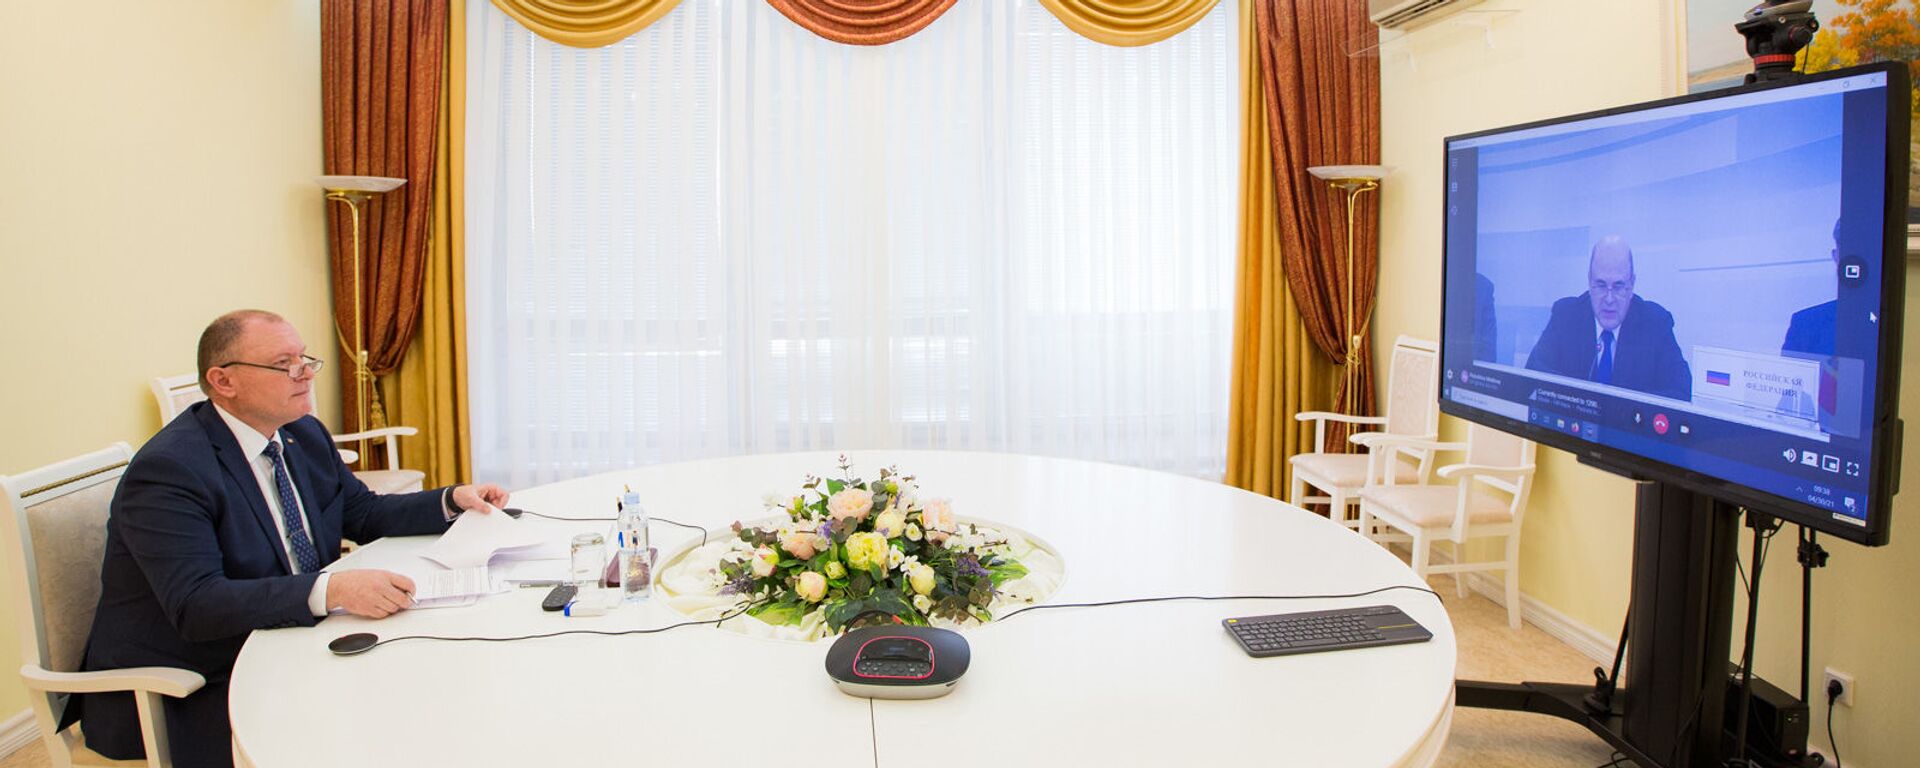 И. о. премьера Молдовы Аурелиу Чокой выступил на встрече глав правительств стран ЕАЭС, которая прошла в онлайн режиме - Sputnik Молдова, 1920, 30.04.2021